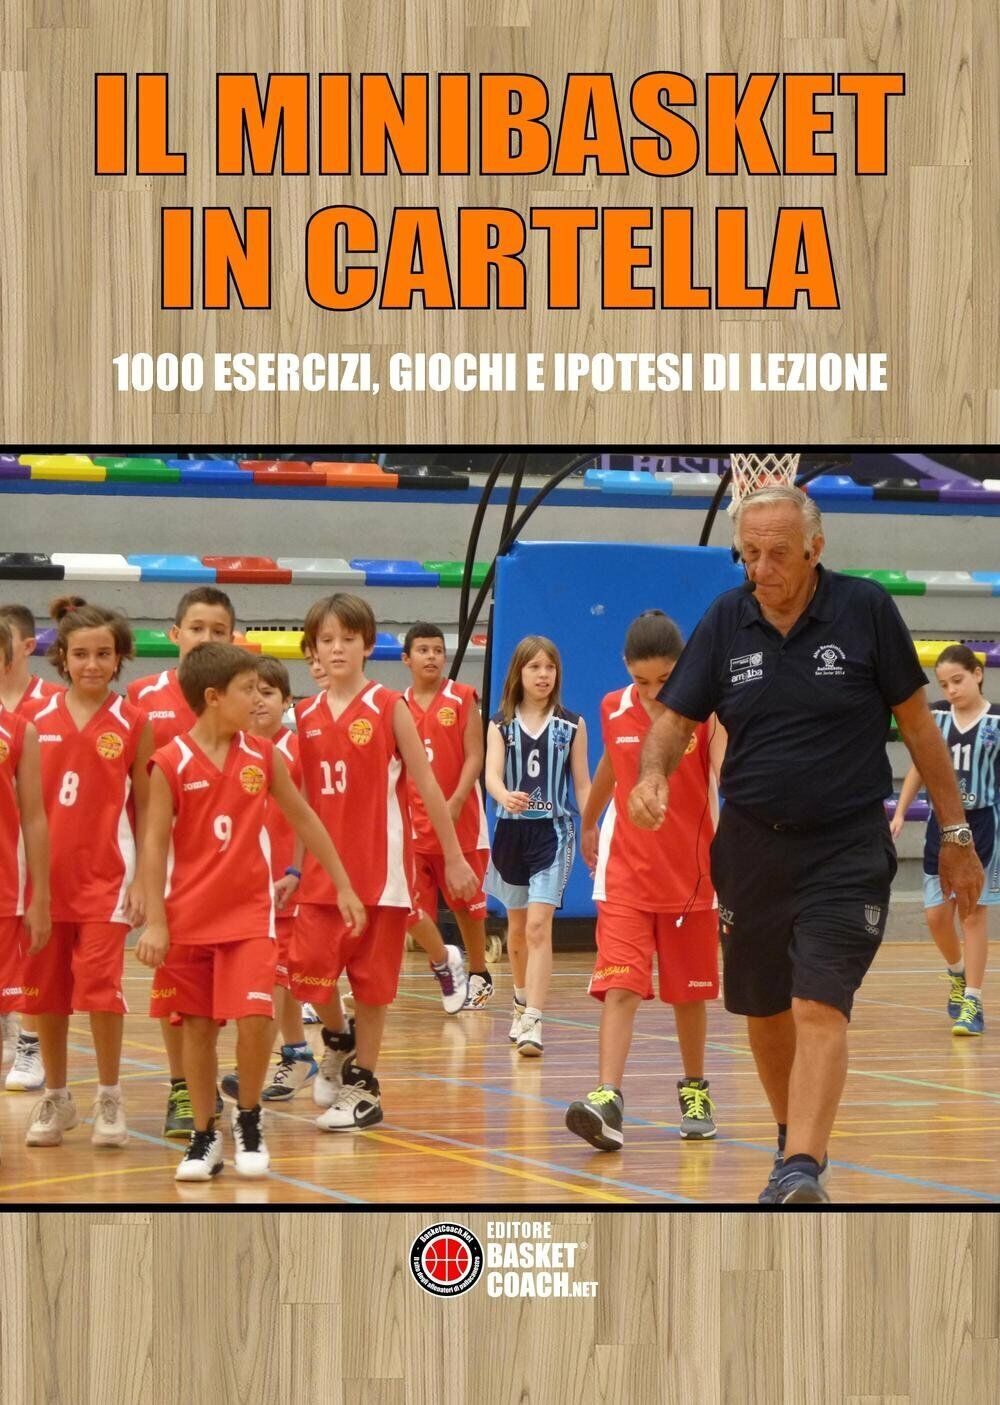 Il minibasket in cartella - Maurizio Mondoni - BasketCoach.Net, 2016 libro usato